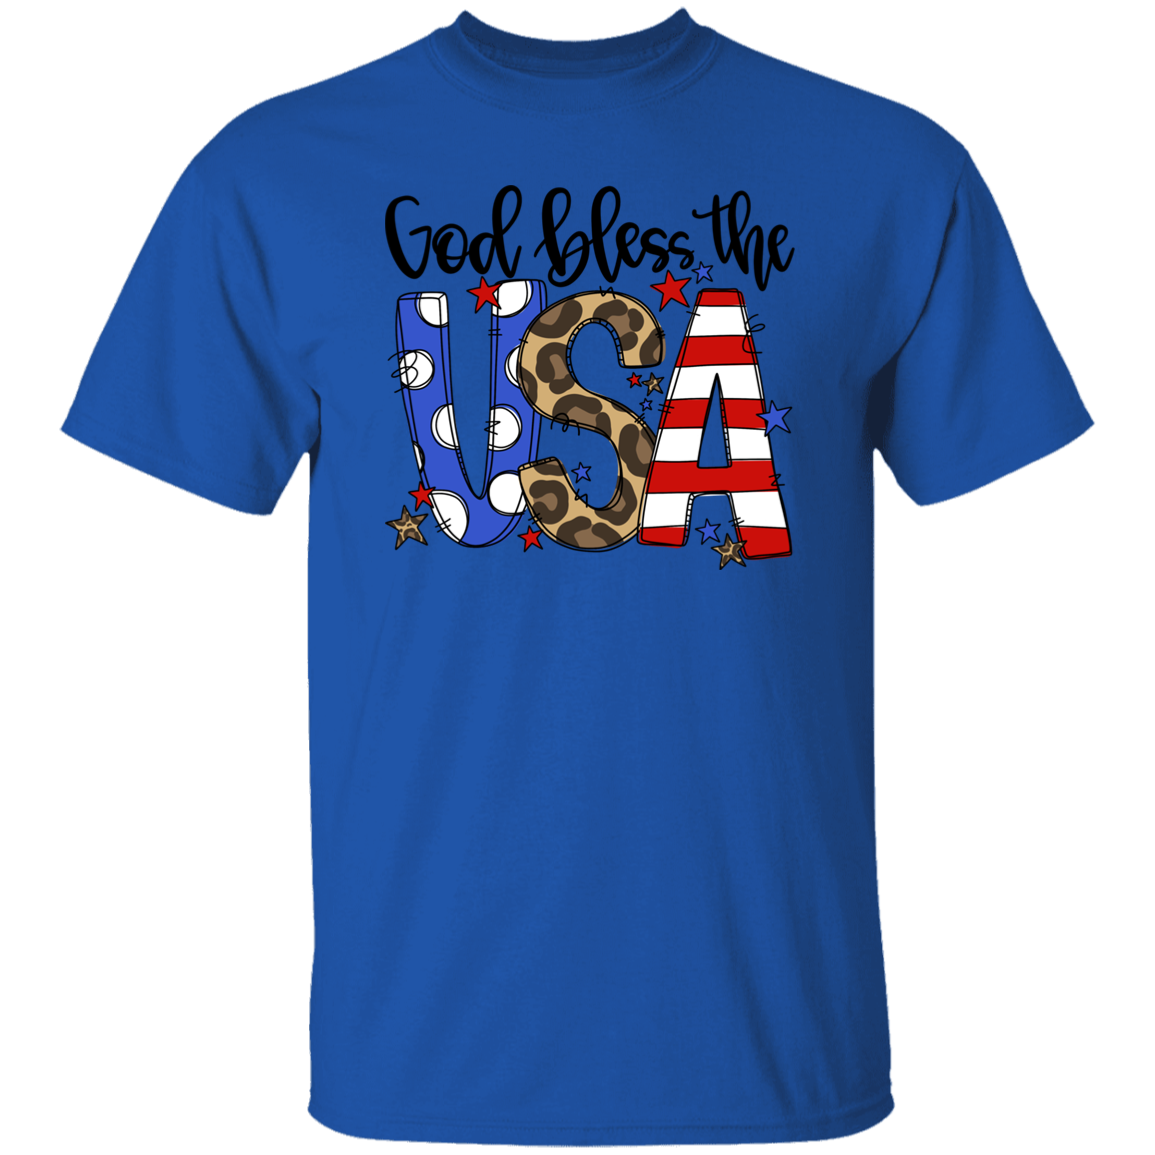 God Bless The USA T-Shirt